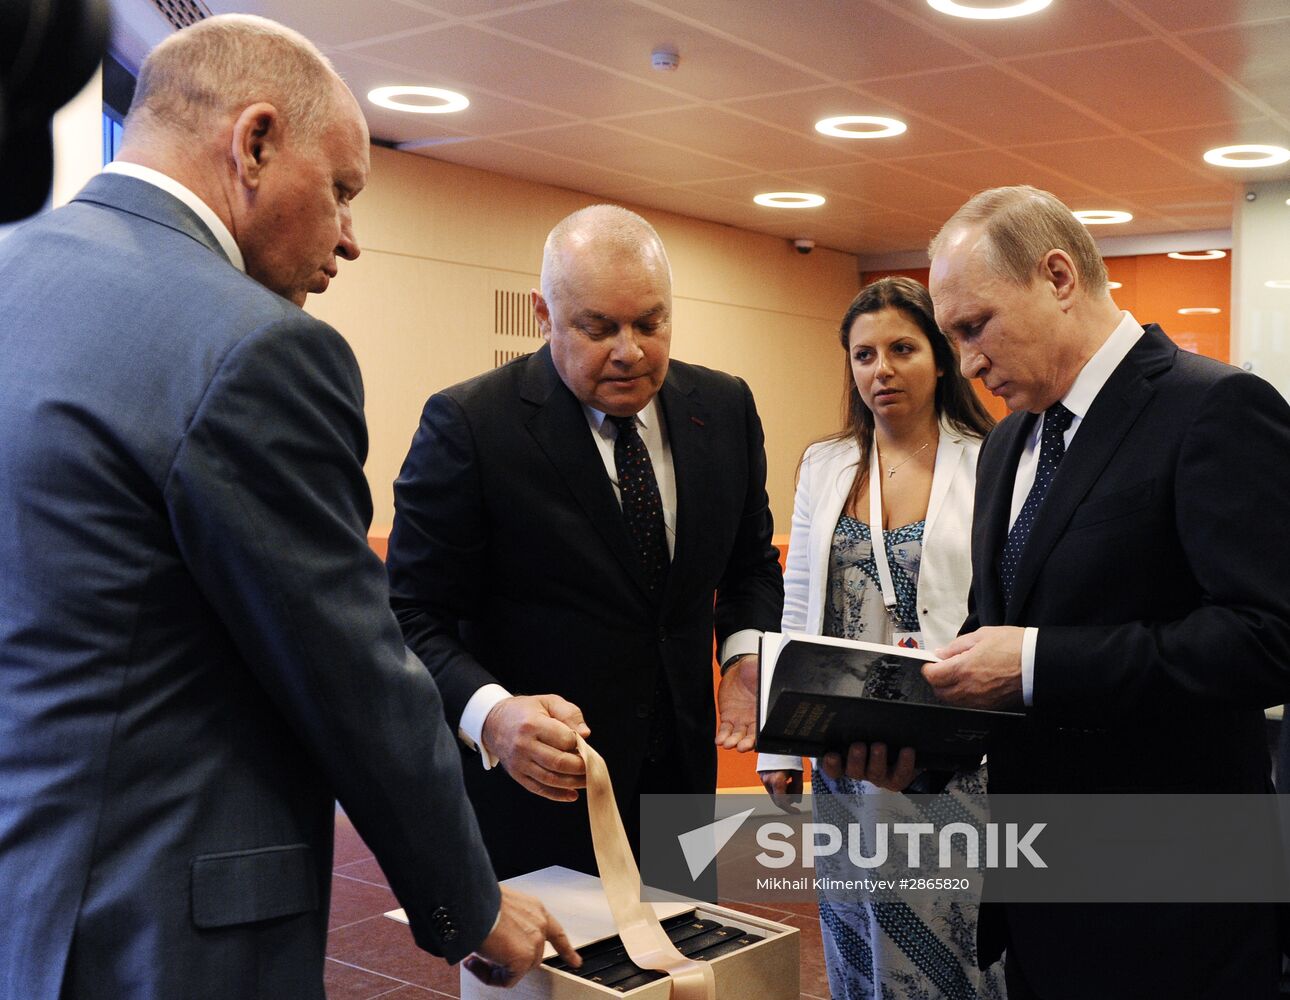 President Vladimir Putin visits Rossiya Segodnya International Information Agency